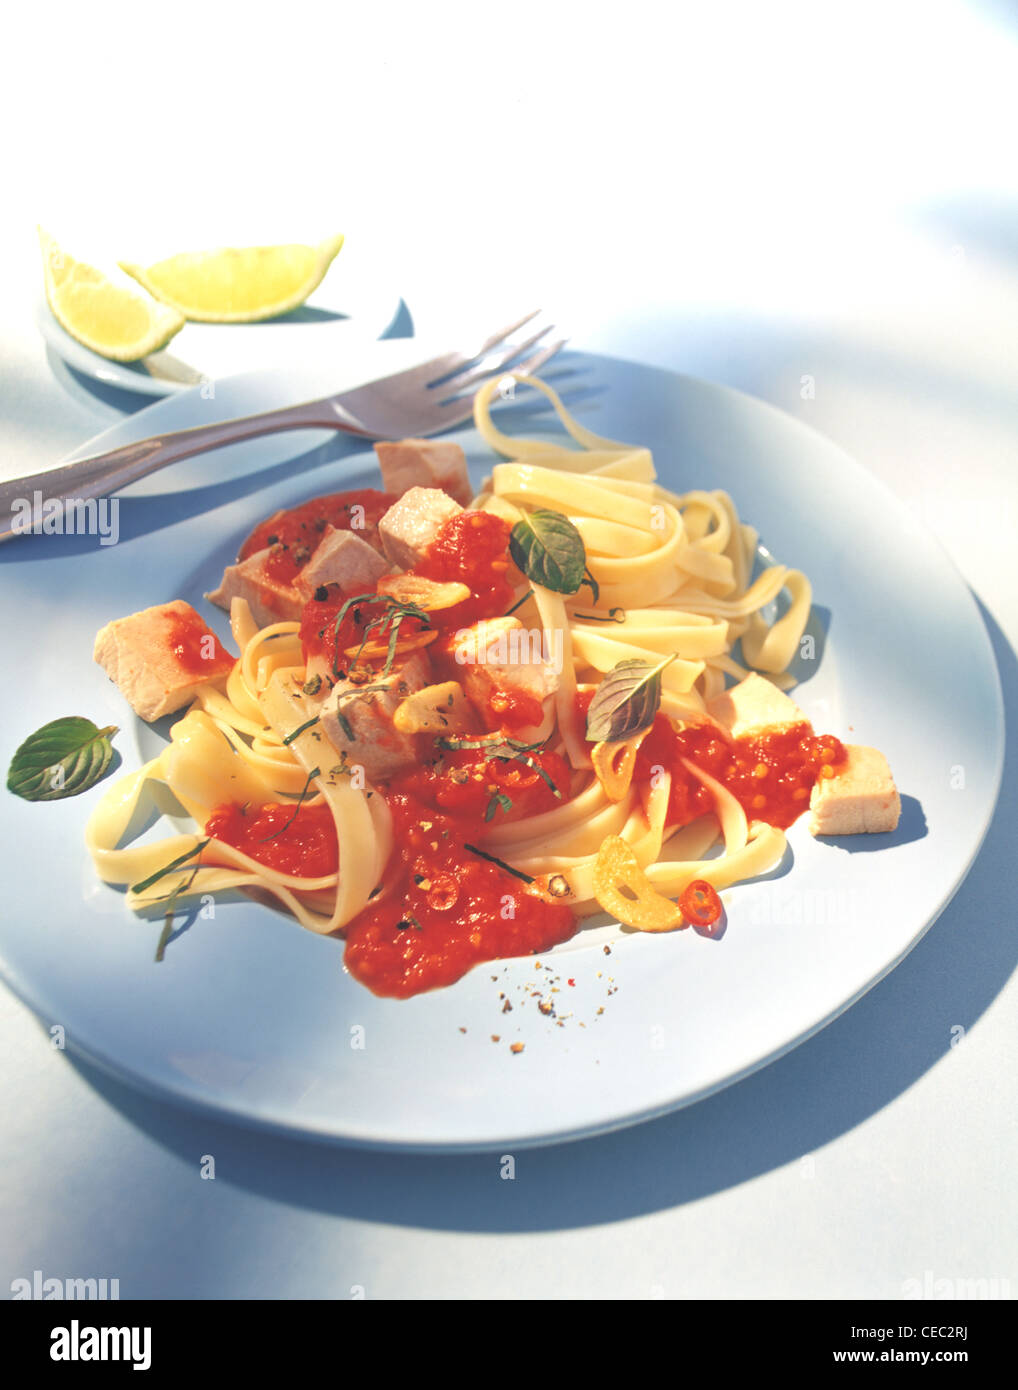 Ribbon noodles with sword fish (Fettuccine con sugo di pesce spada) Stock Photo